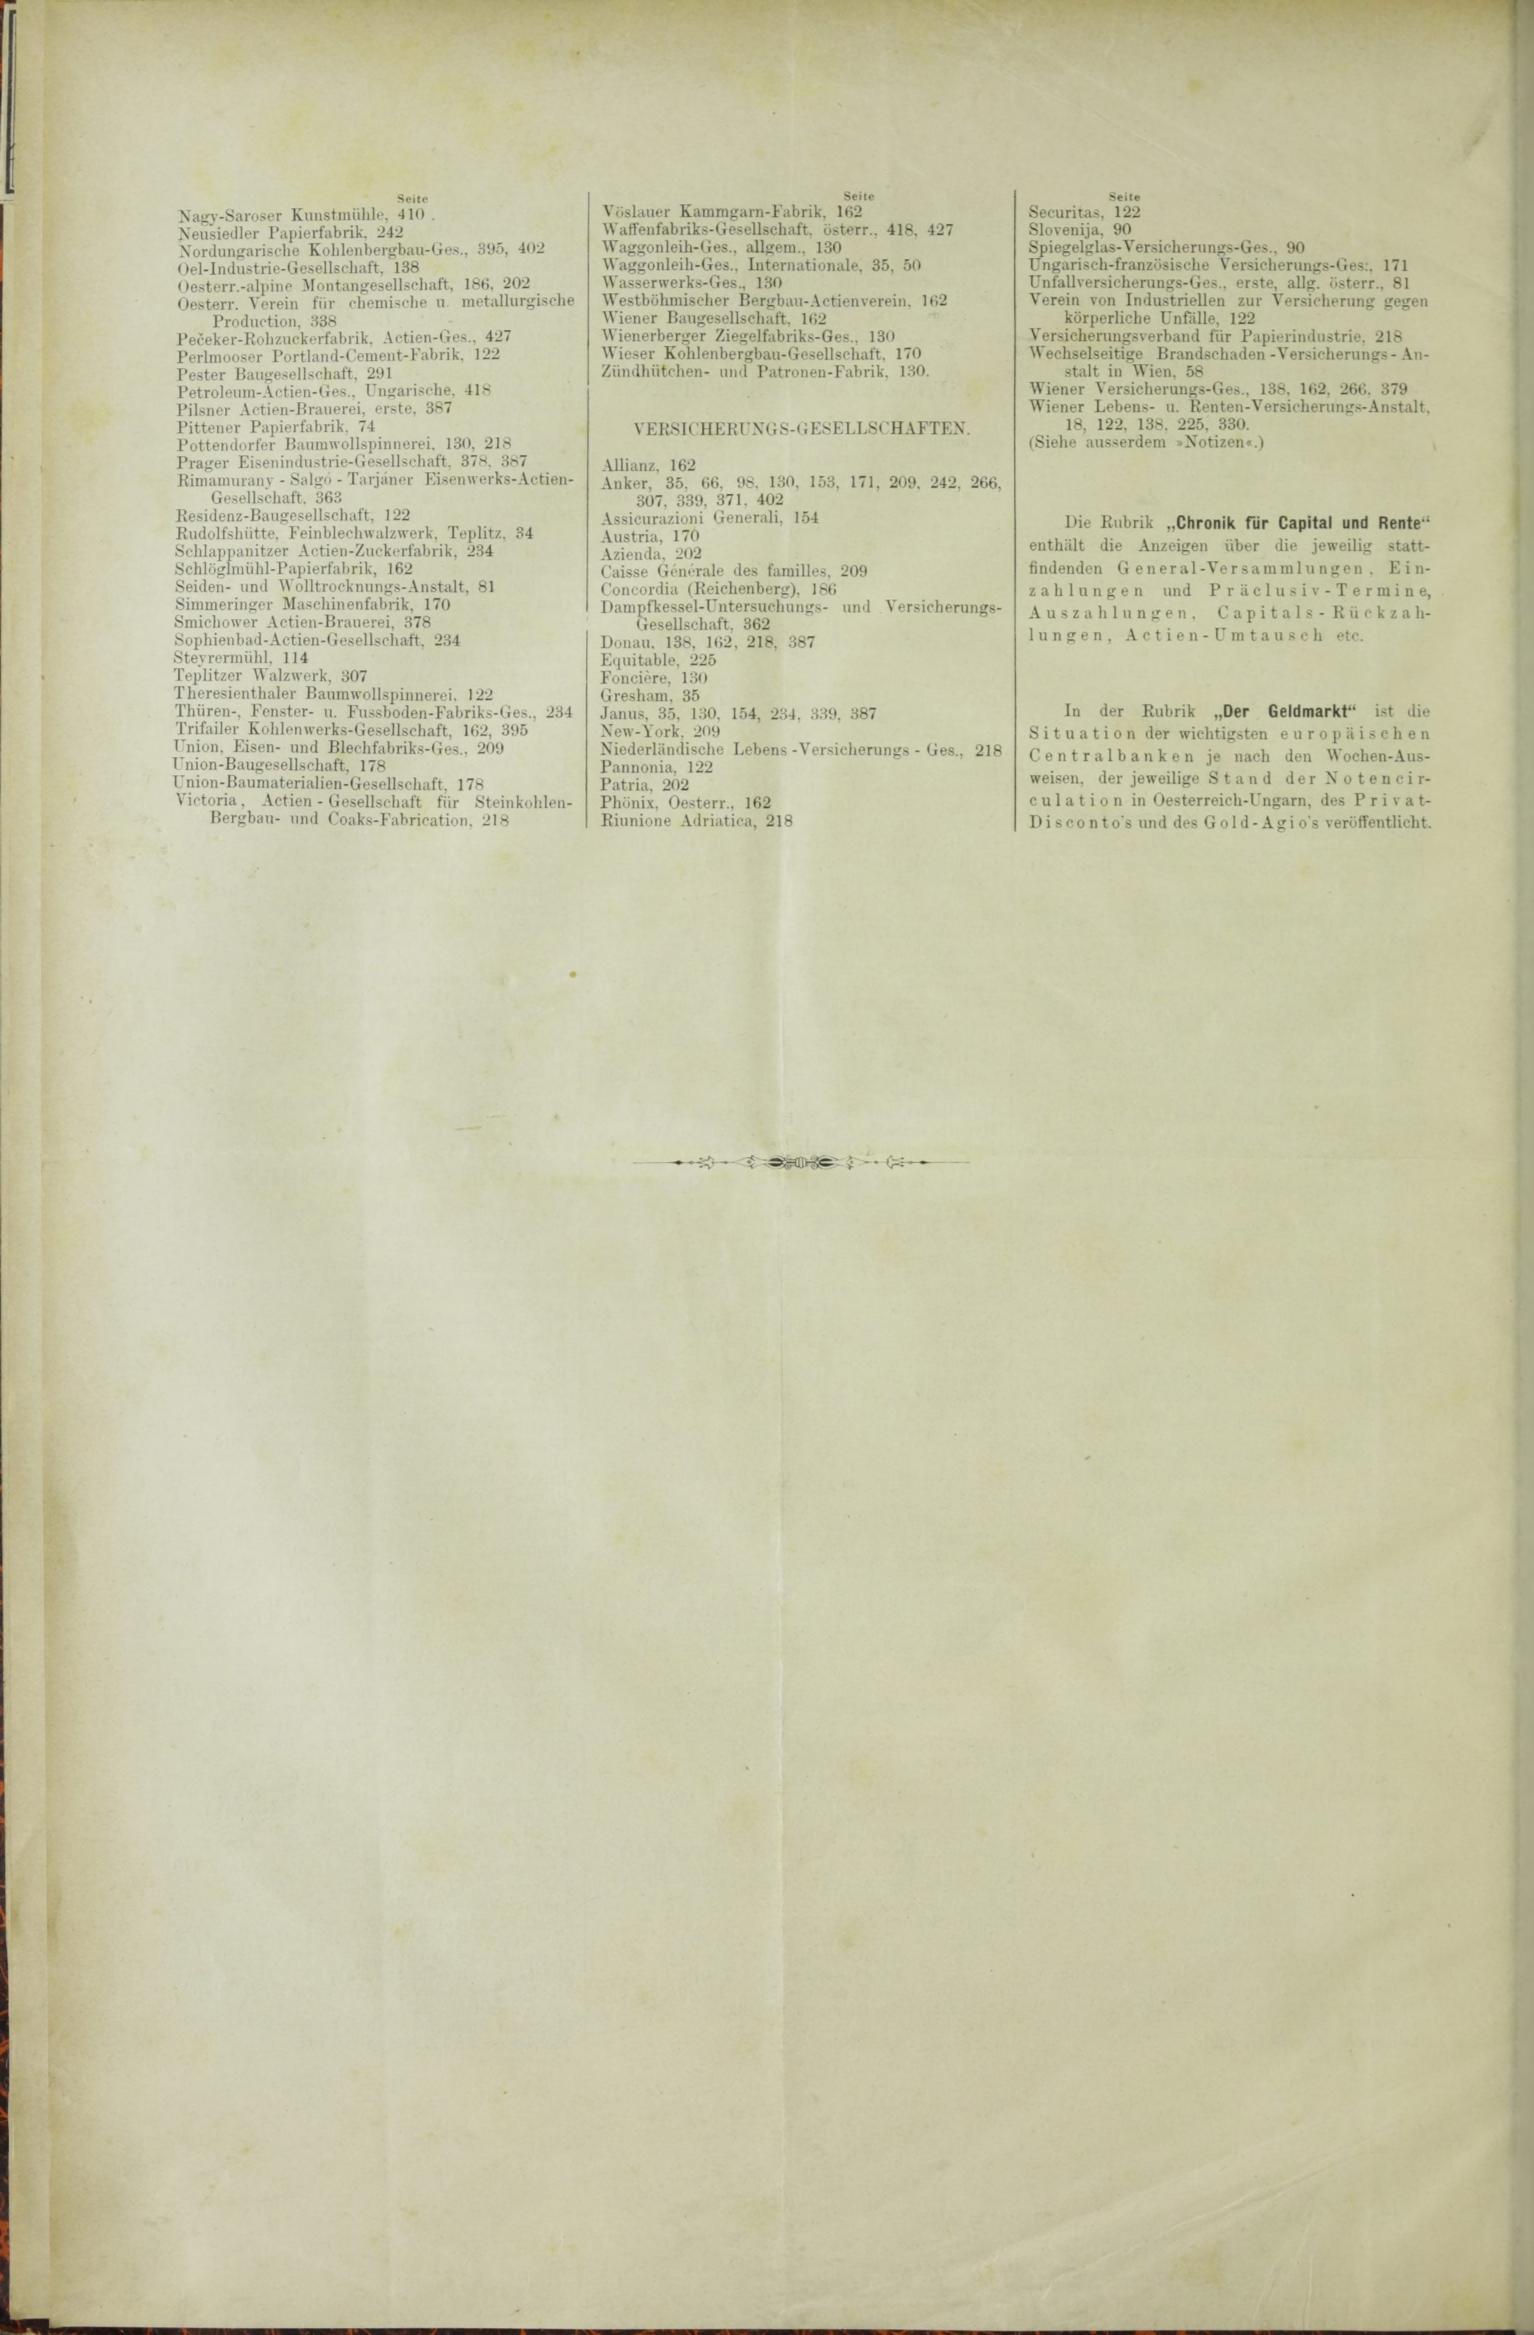 Der Tresor 05.03.1885 - Seite 12